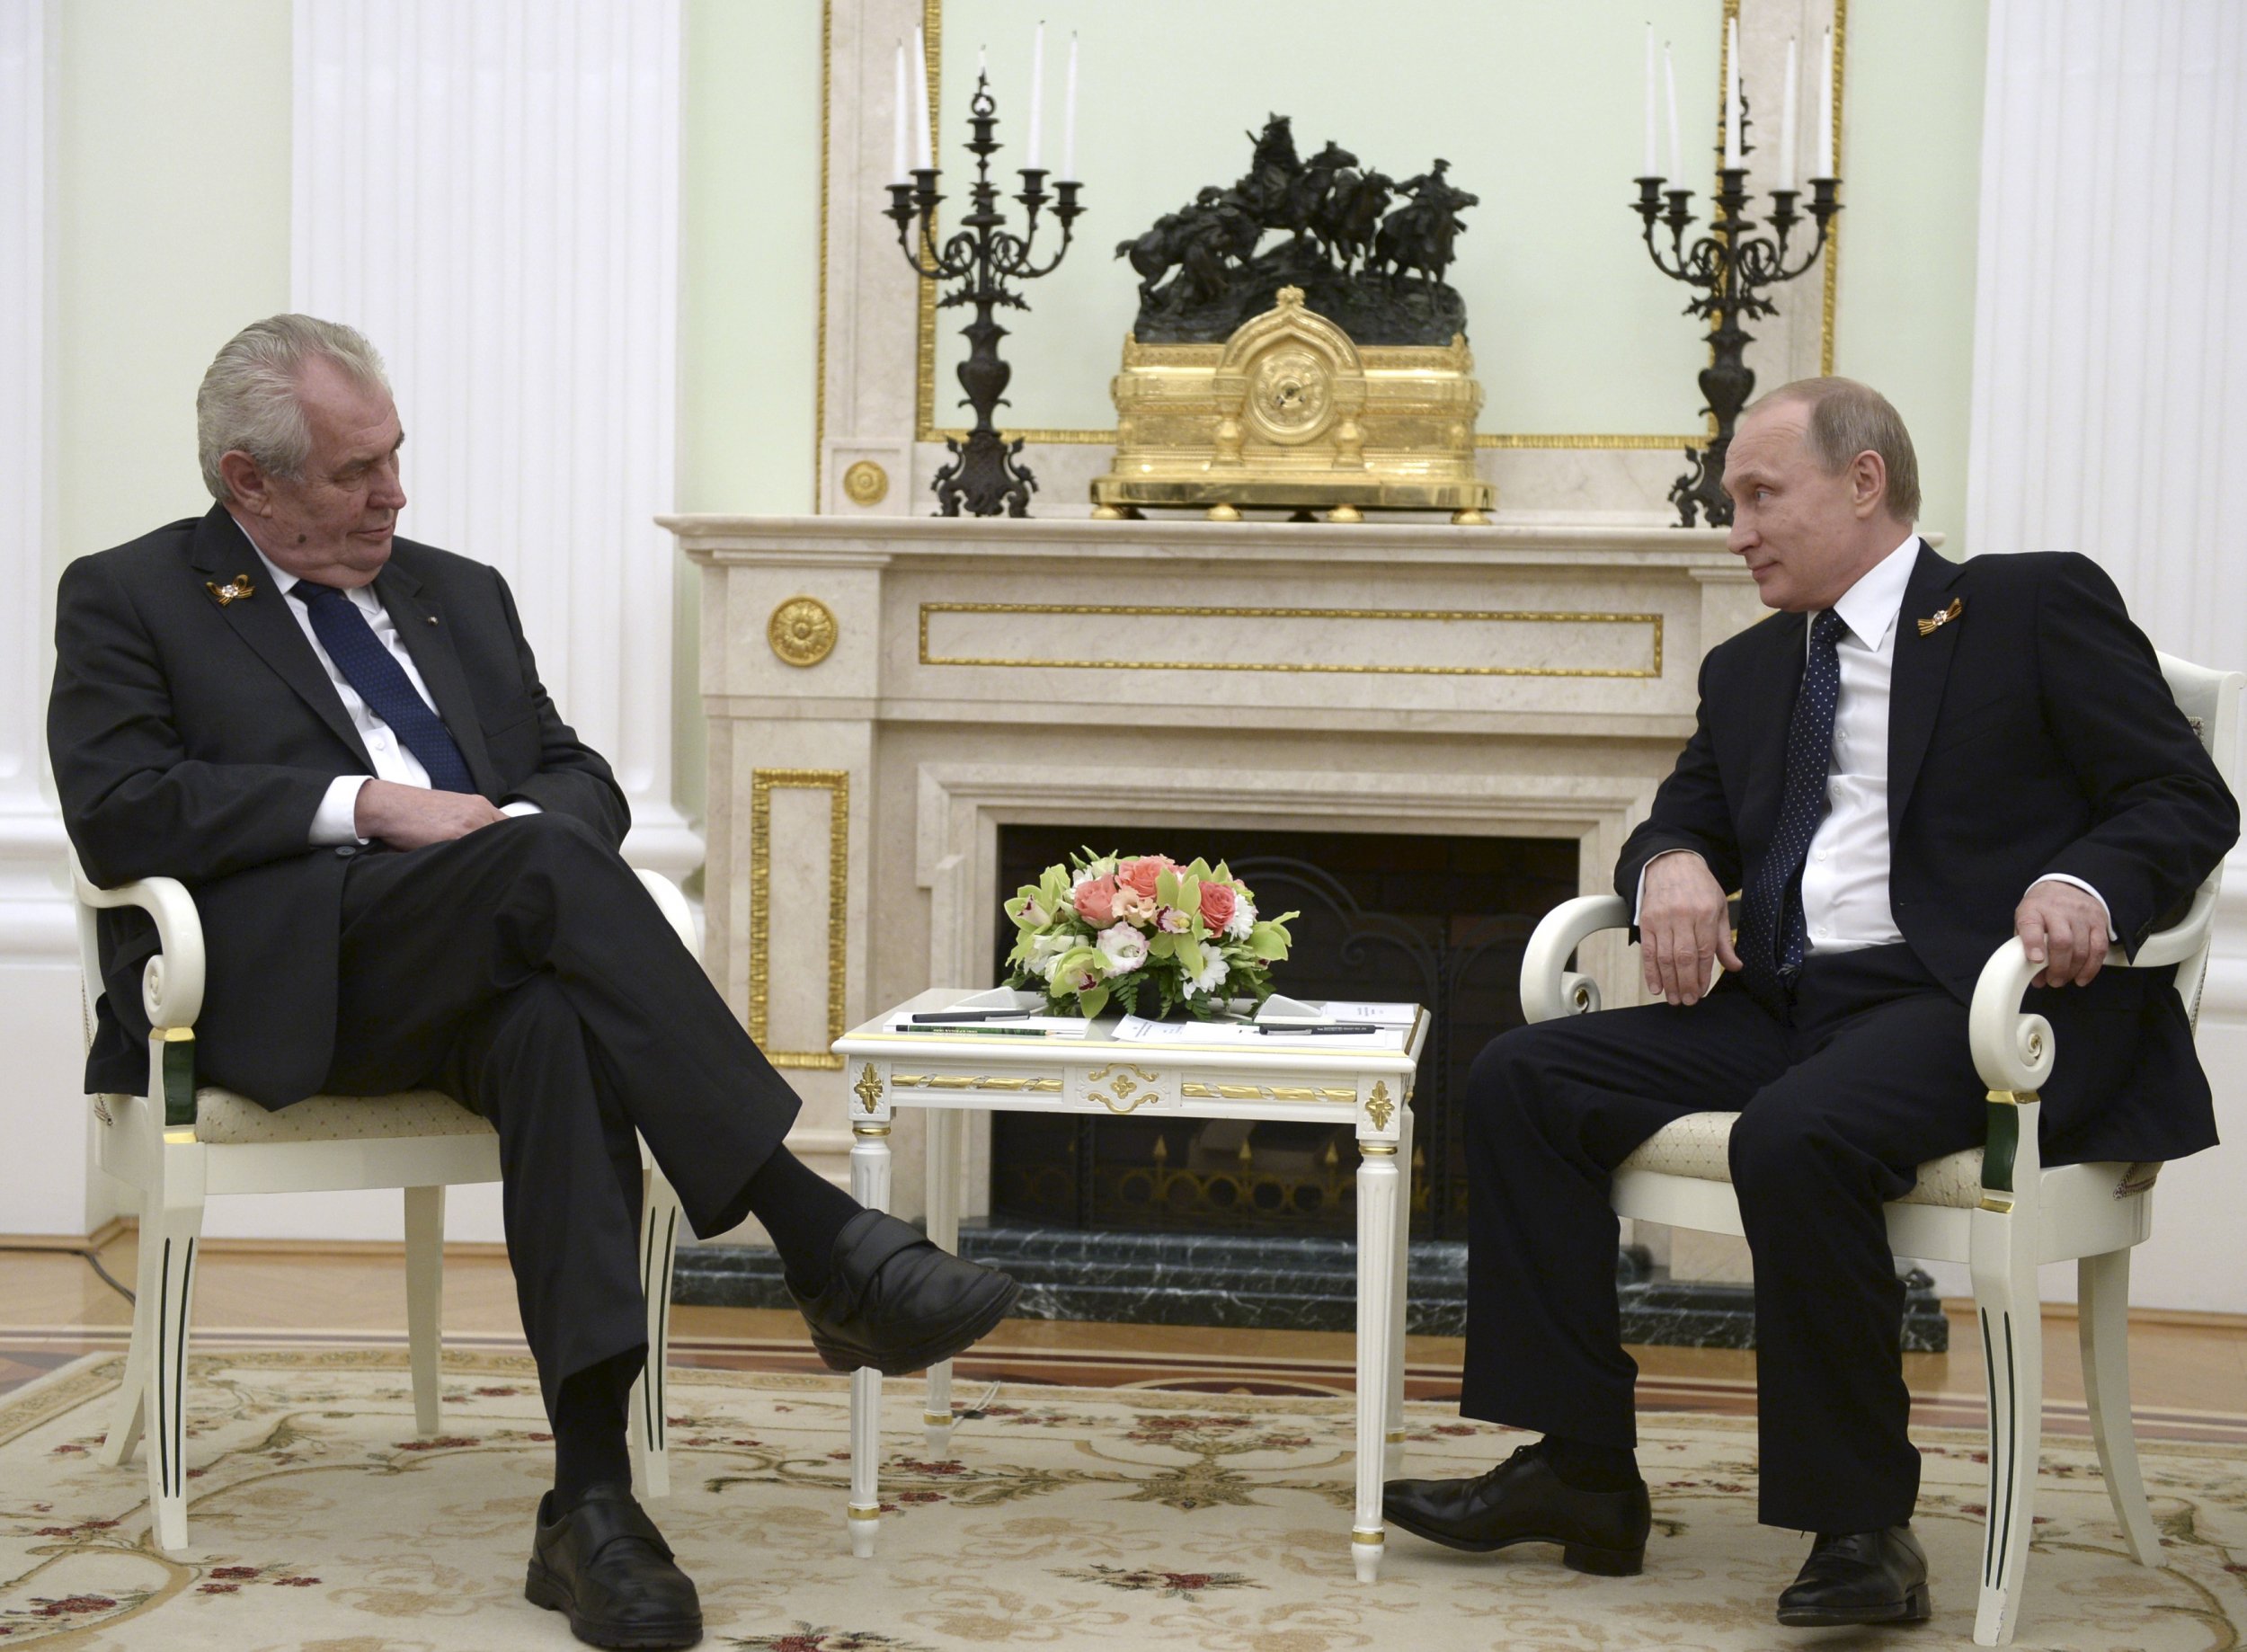 Zeman and Putin